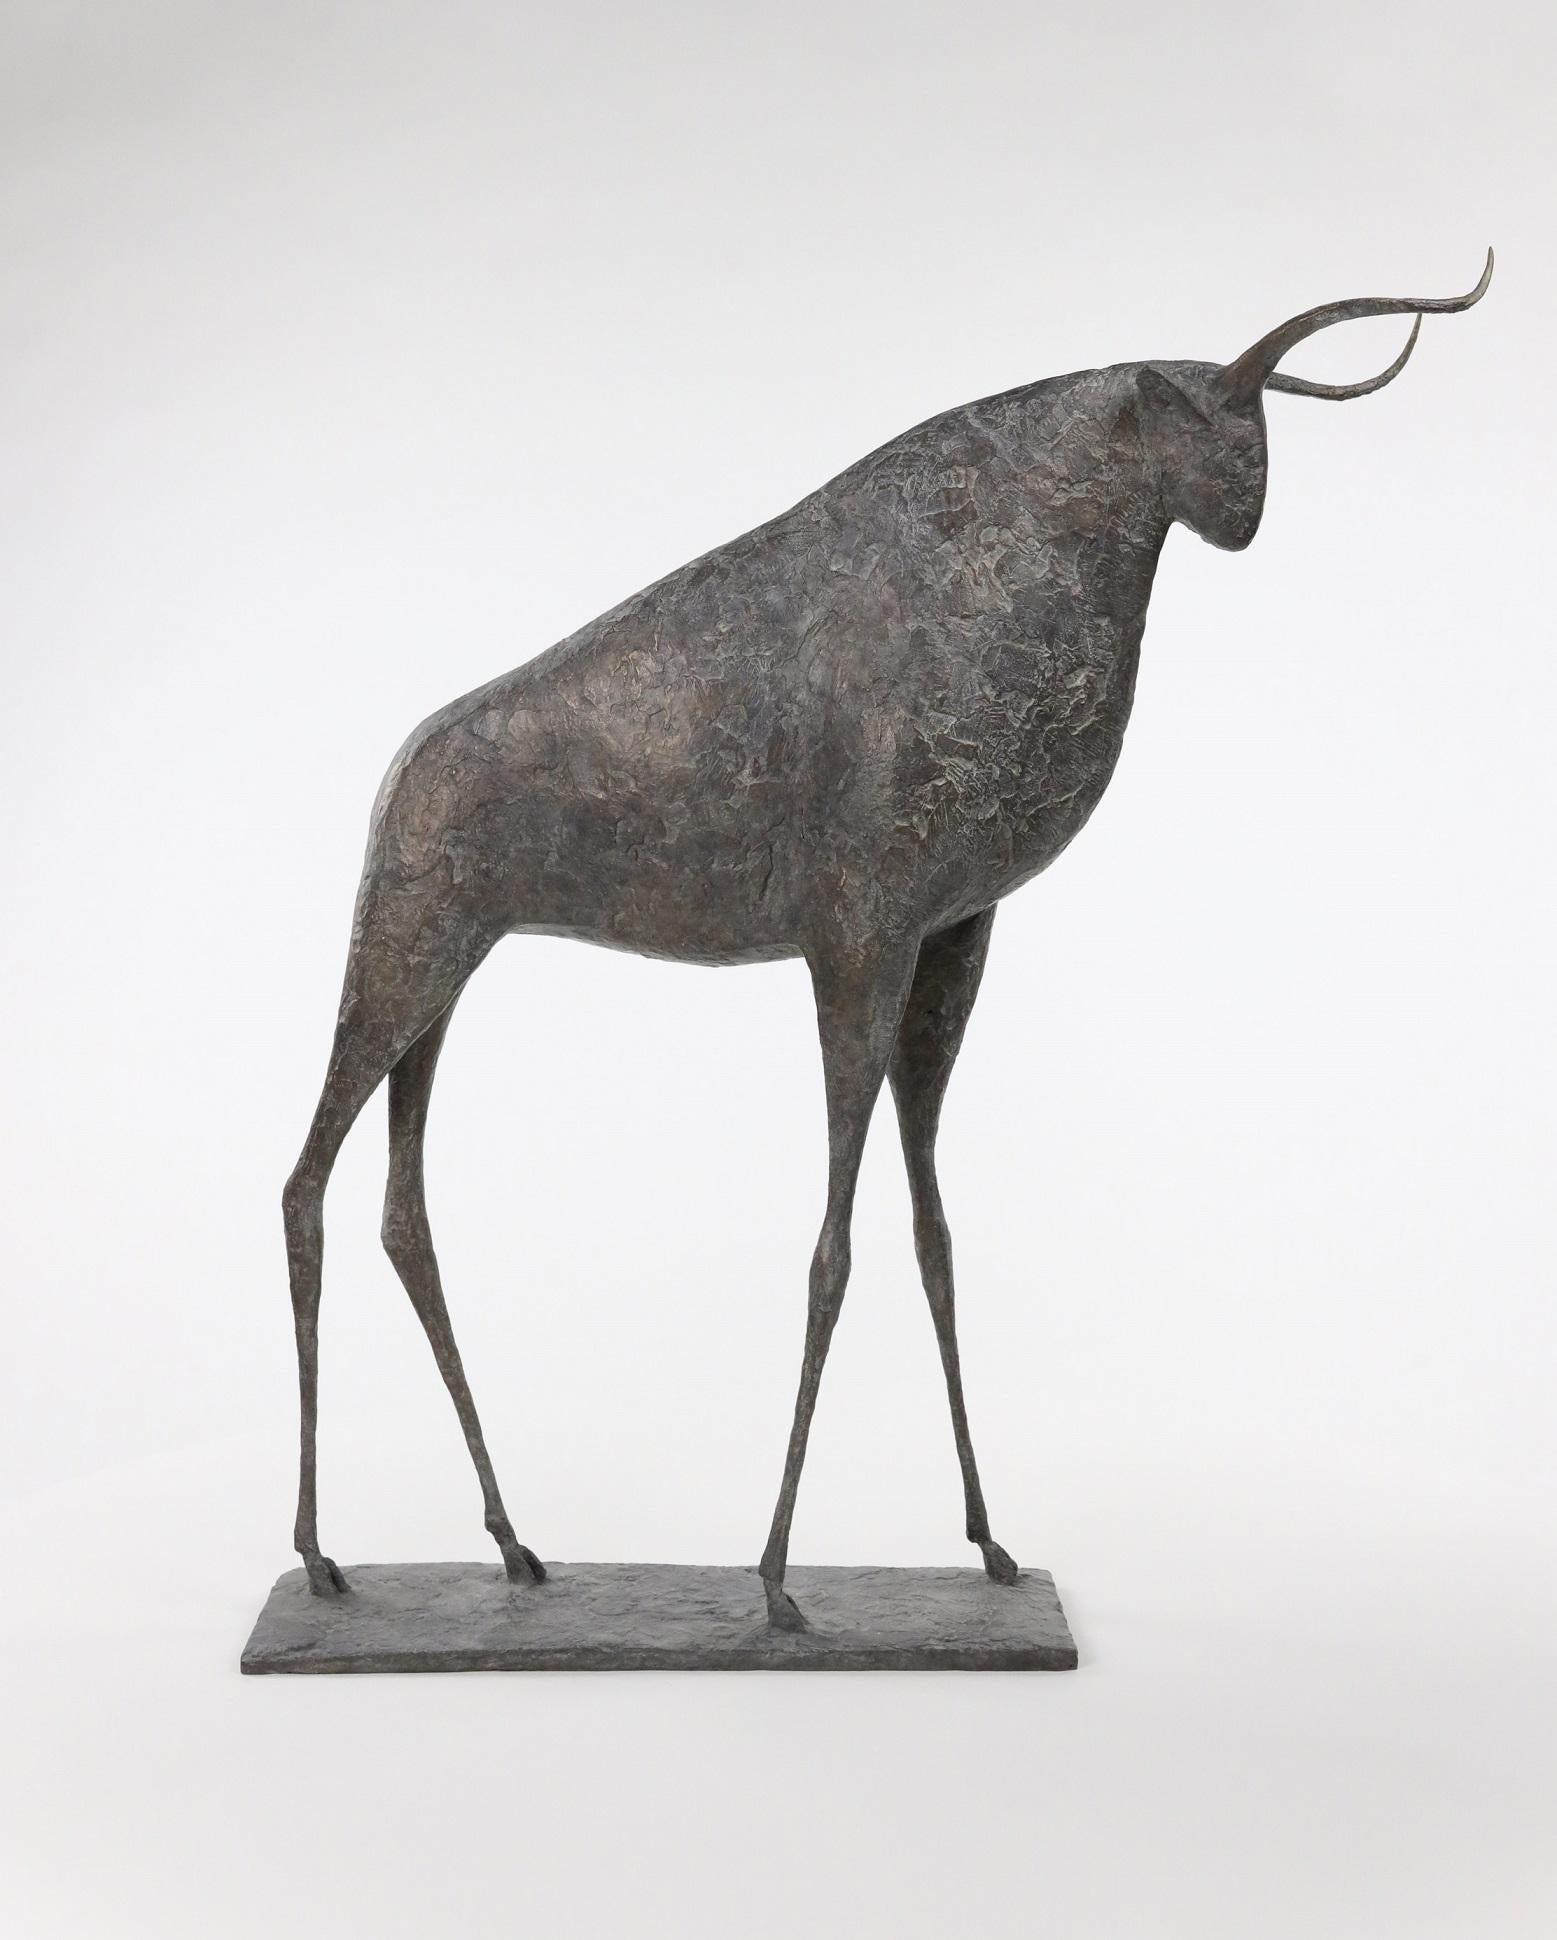 Bull IX ist eine Bronzeskulptur des französischen zeitgenössischen Künstlers Pierre Yermia mit den Maßen 66 × 60 × 15 cm (26 × 23,6 × 5,9 in). 
Die Skulptur ist signiert und nummeriert, gehört zu einer limitierten Auflage von 8 Exemplaren + 4